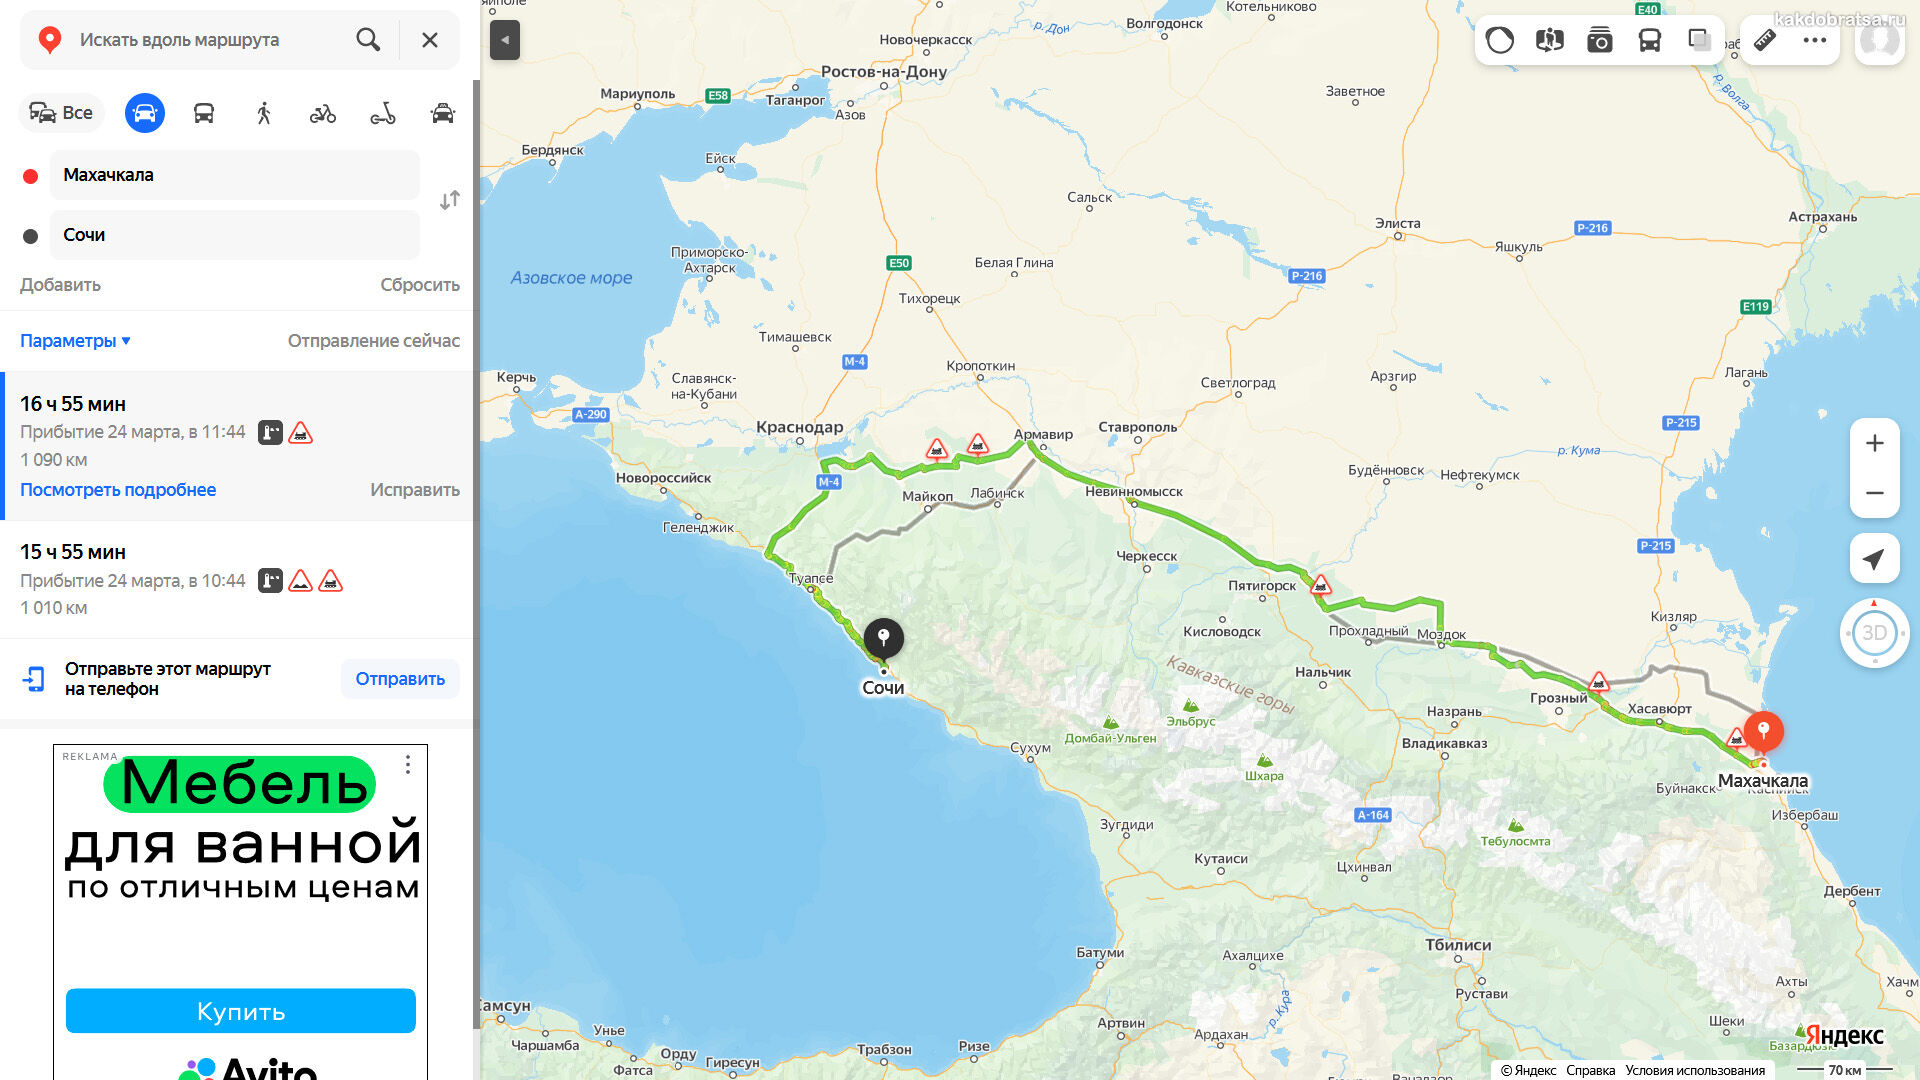 Расстояние от Махачкалы до Сочи по карте в км